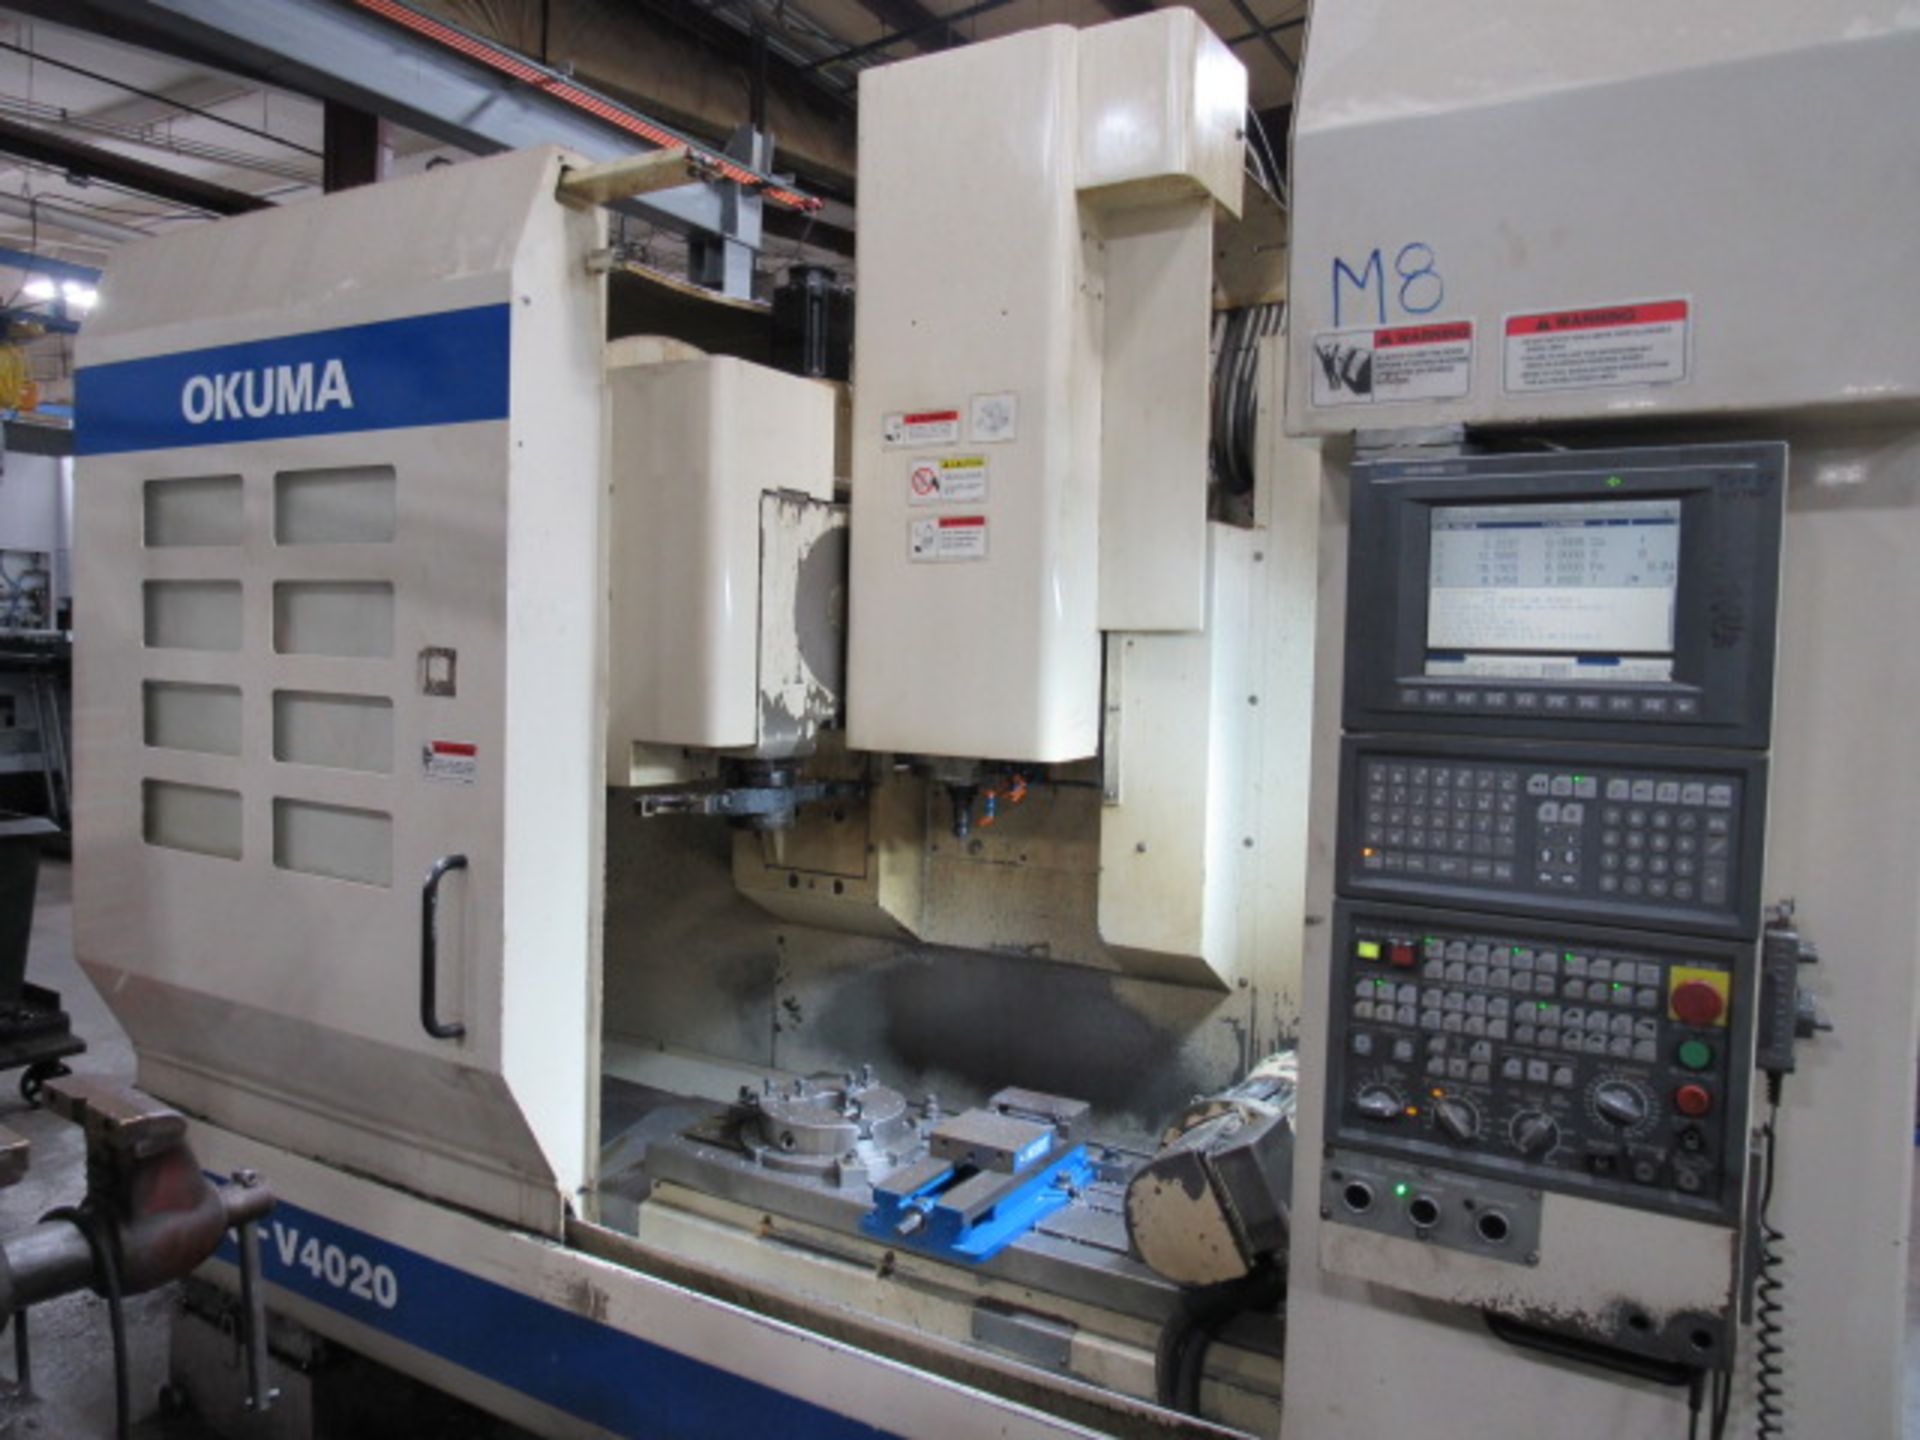 Okuma MC-V4020 5 Axis CNC Vertical Machining Center - Image 18 of 18